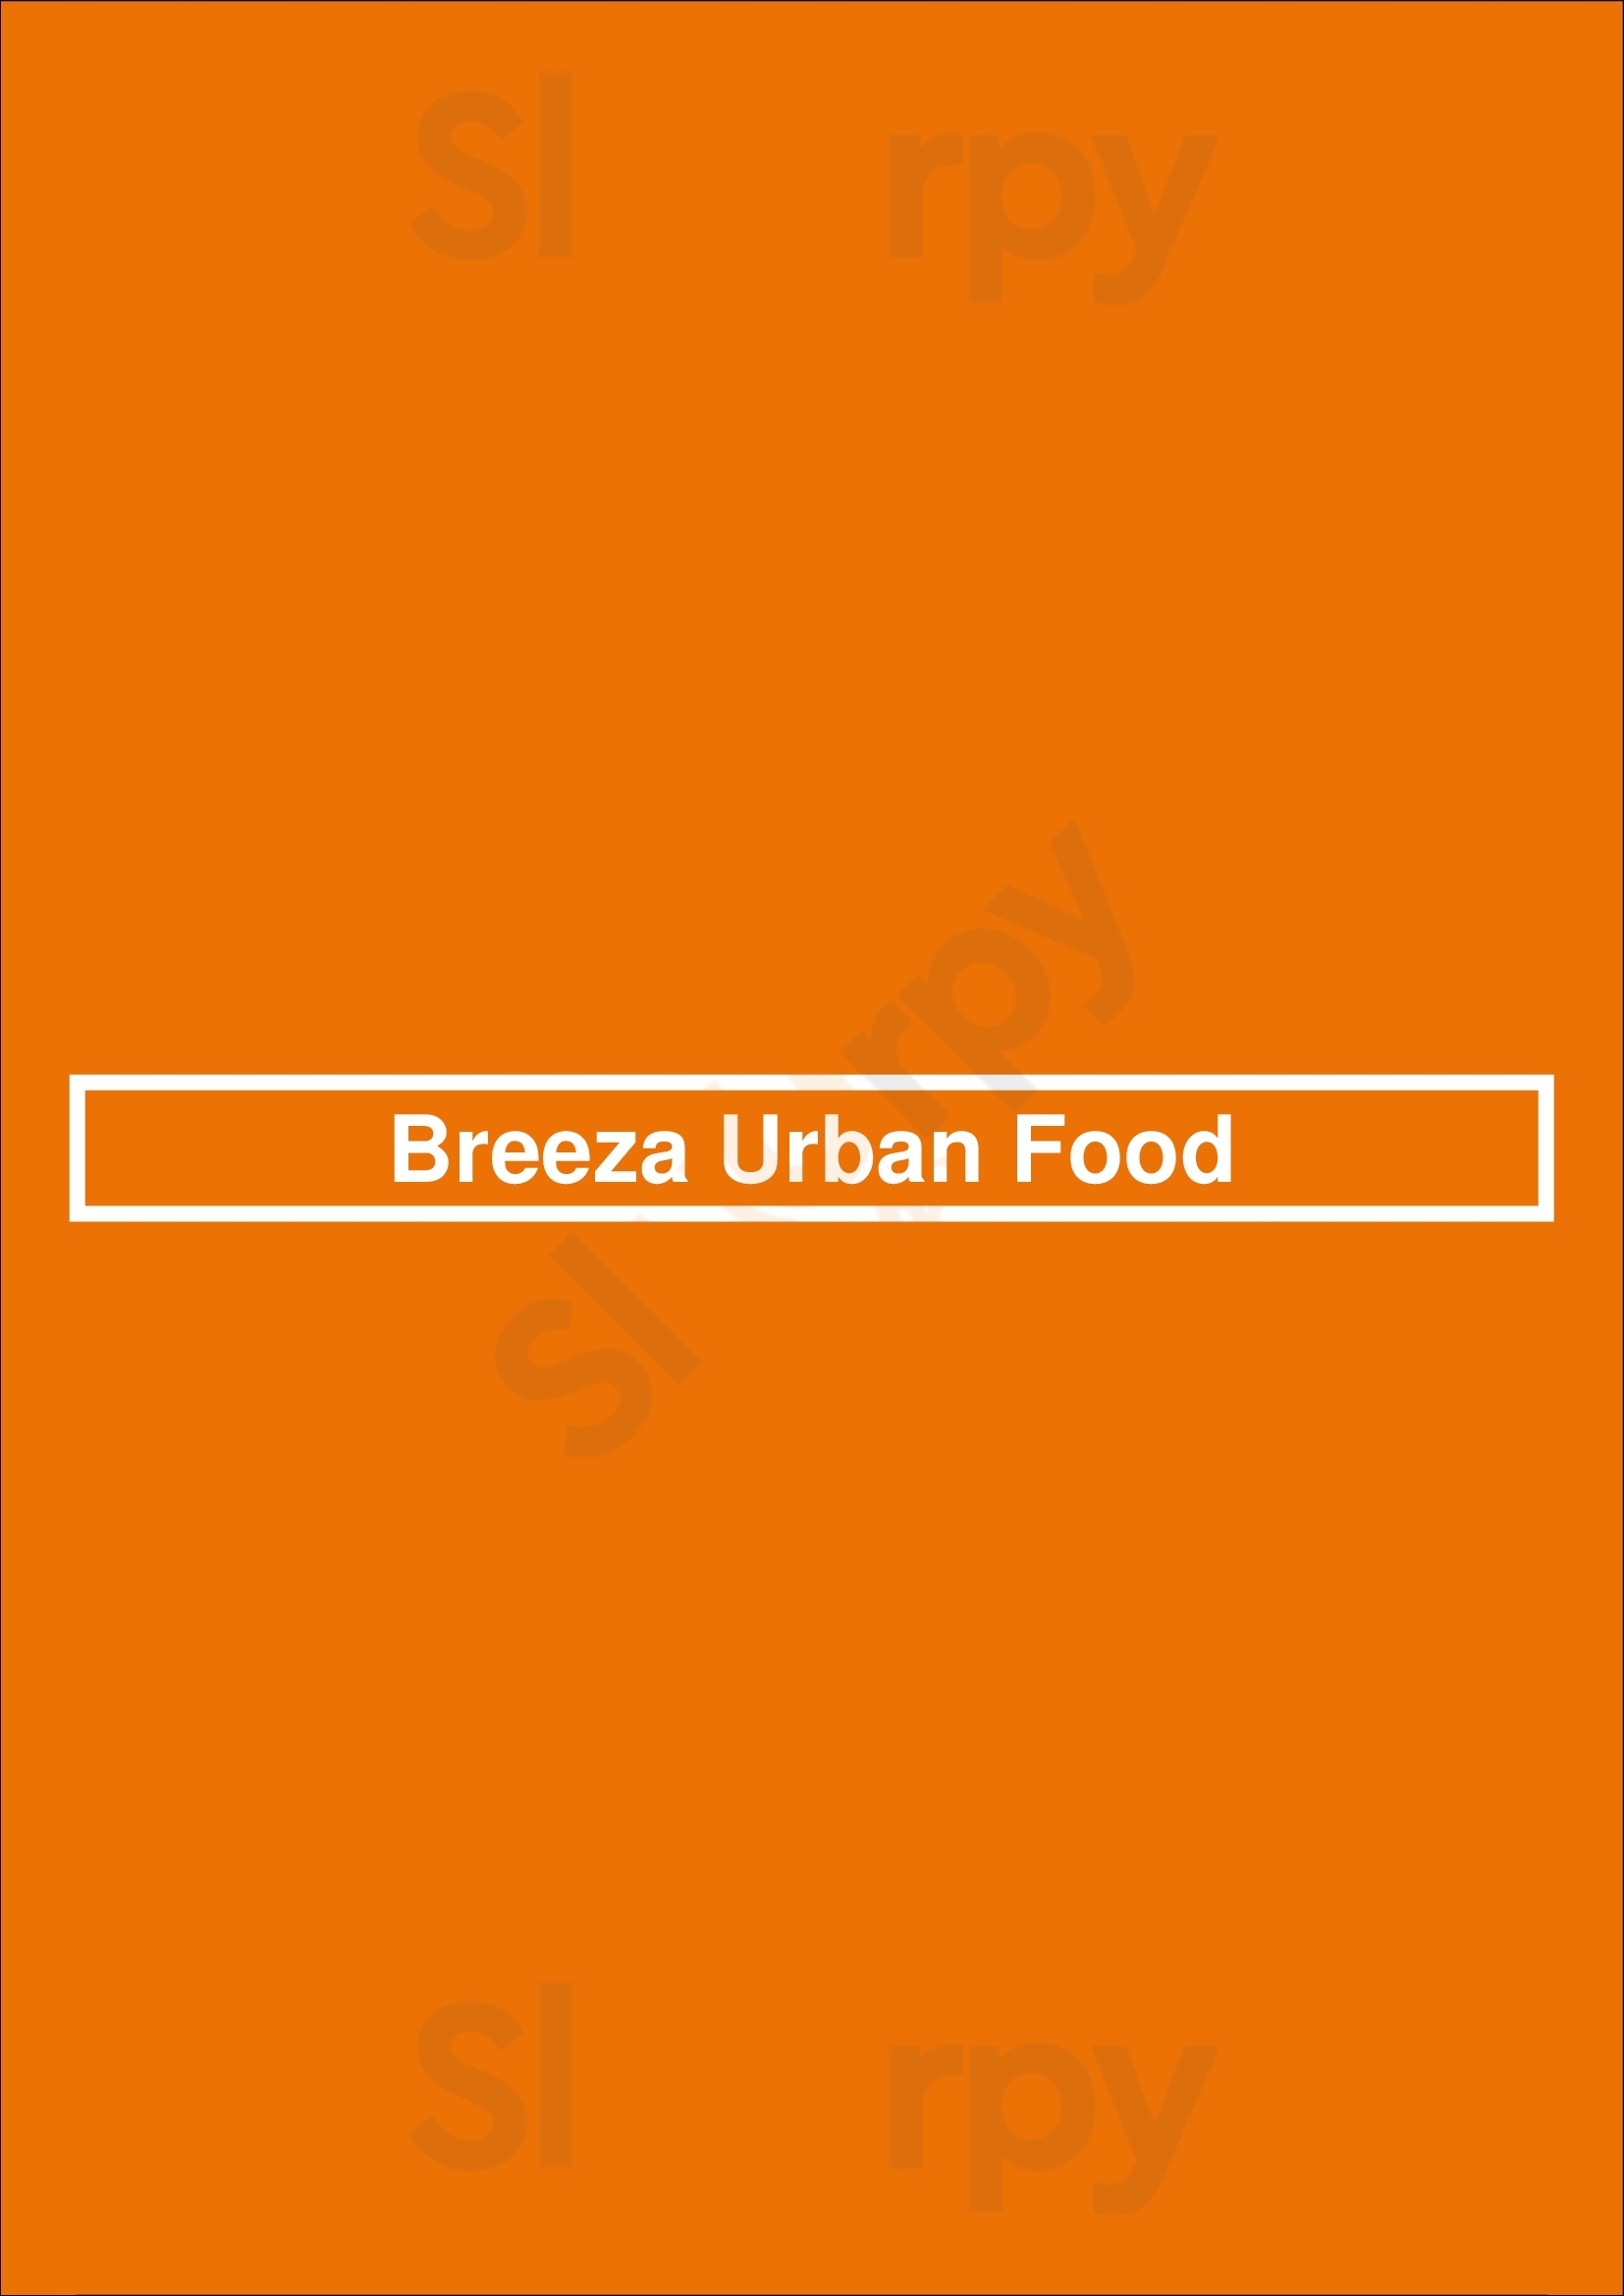 Breeza Urban Food Valencia Menu - 1